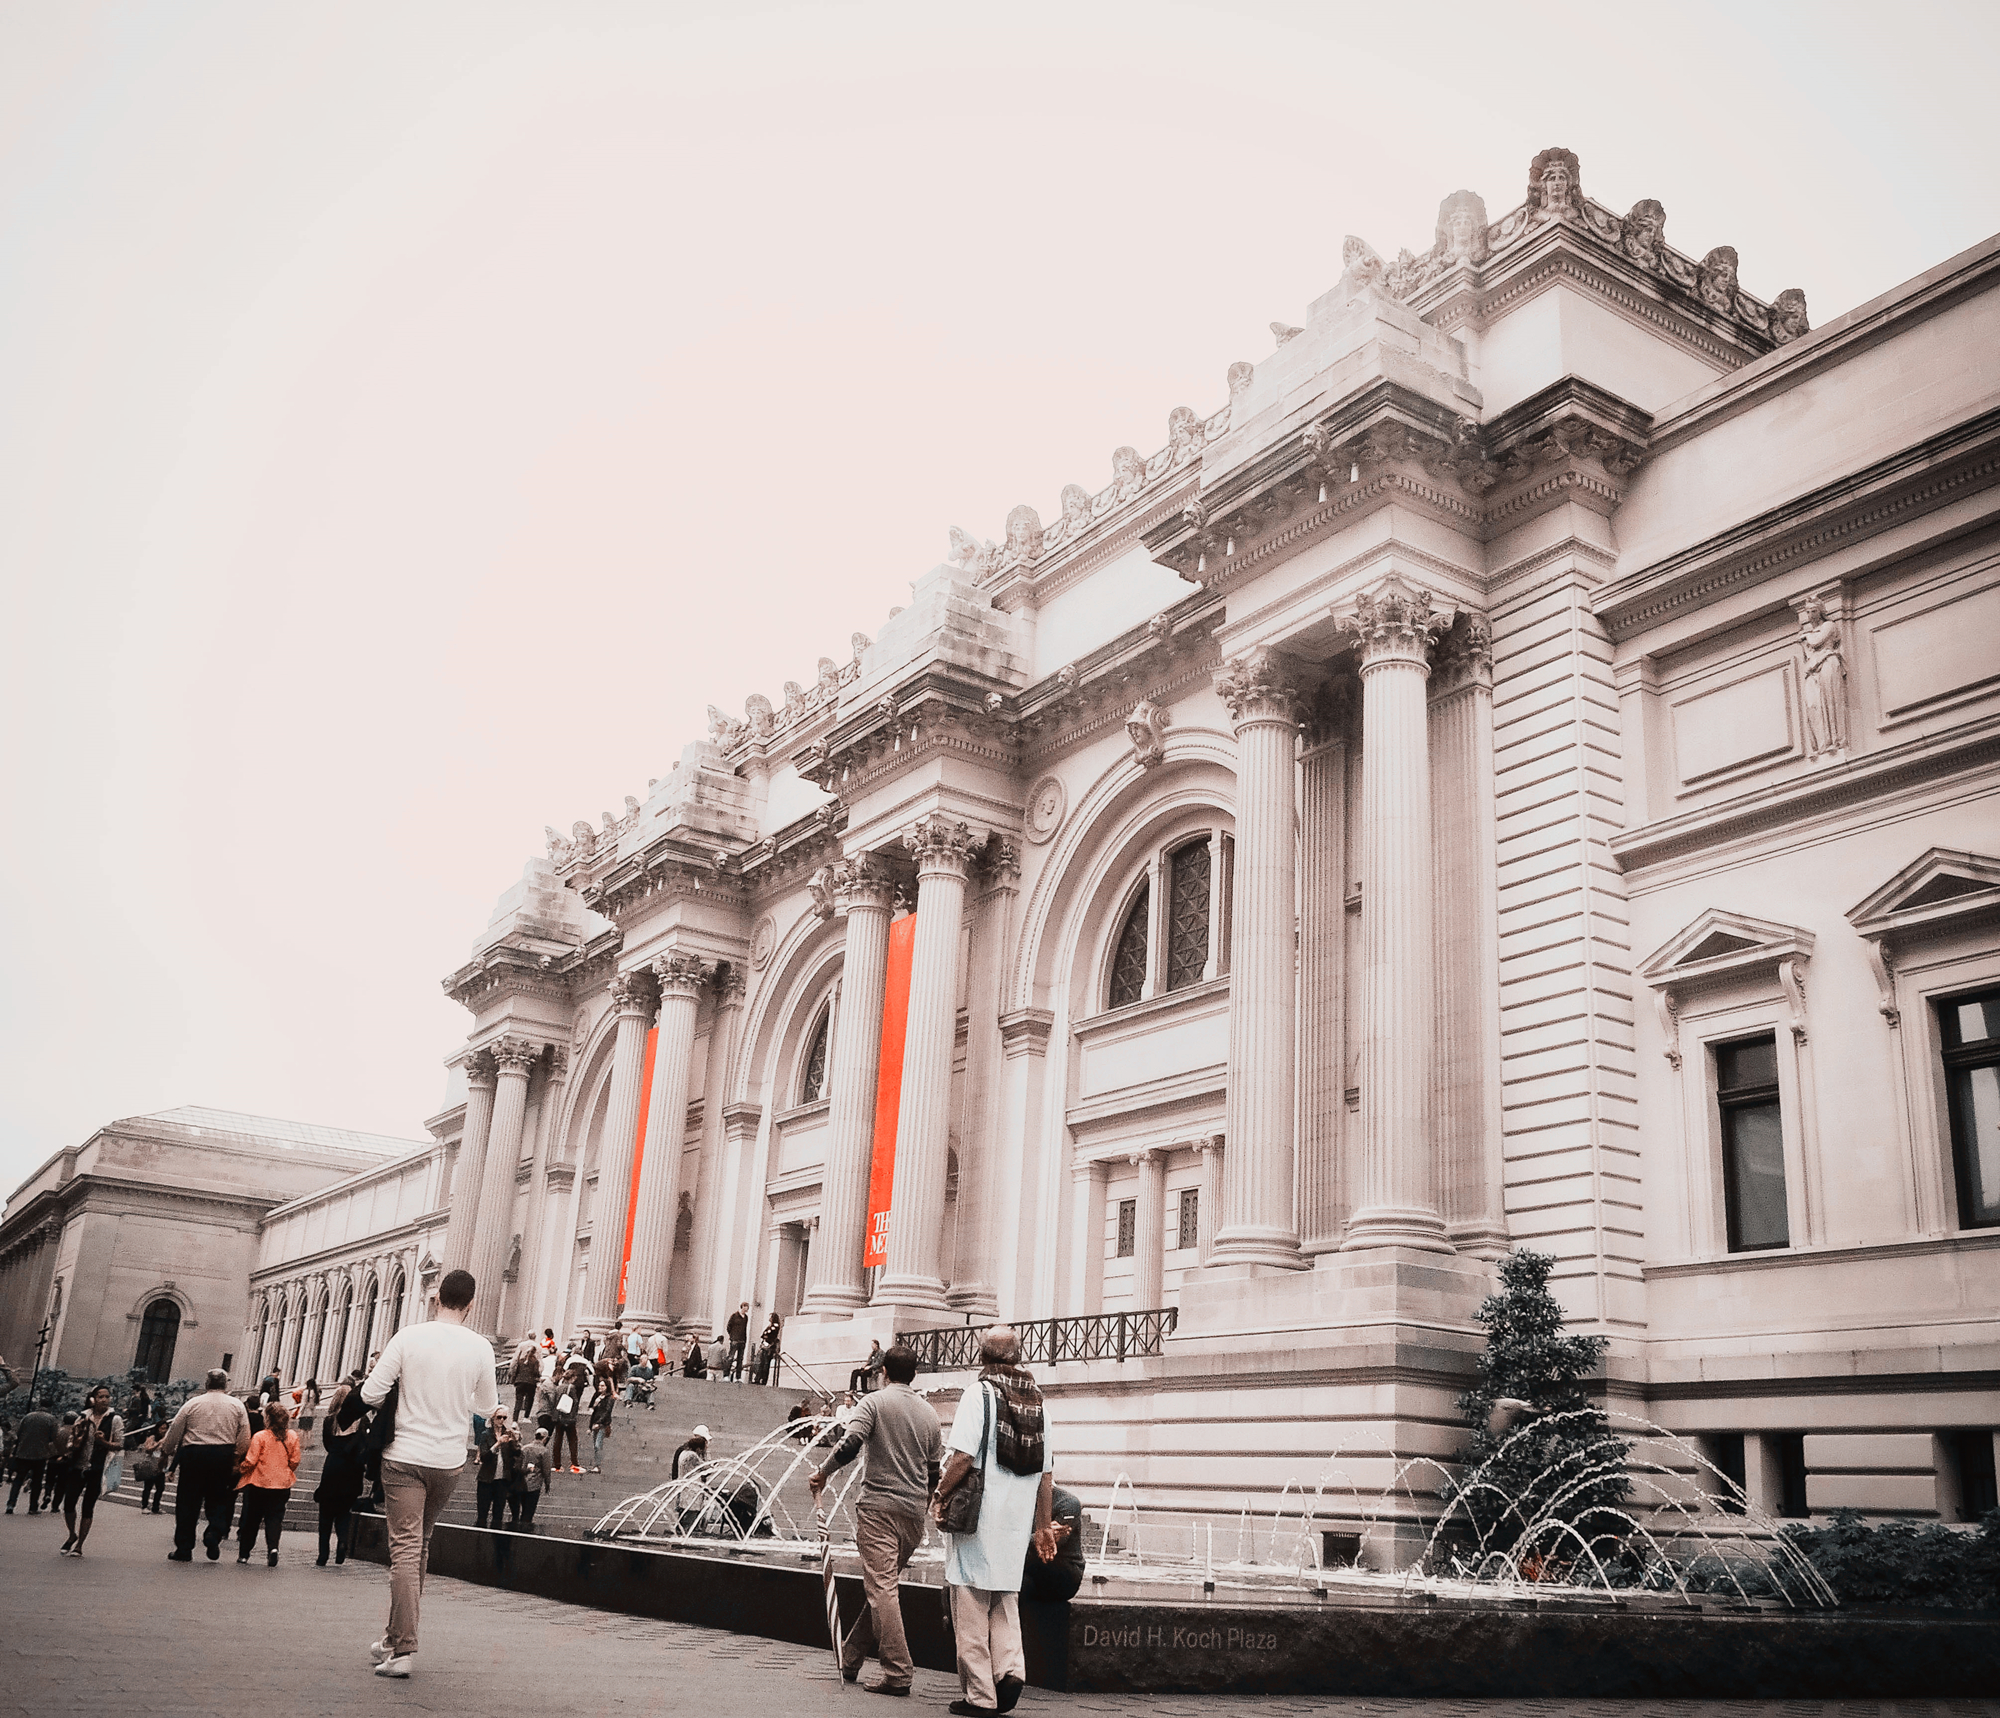 纽约大都会艺术博物馆 (© Susanne Pommer/Shutterstock) | 必应每日高清壁纸 - 精彩,从这里开始